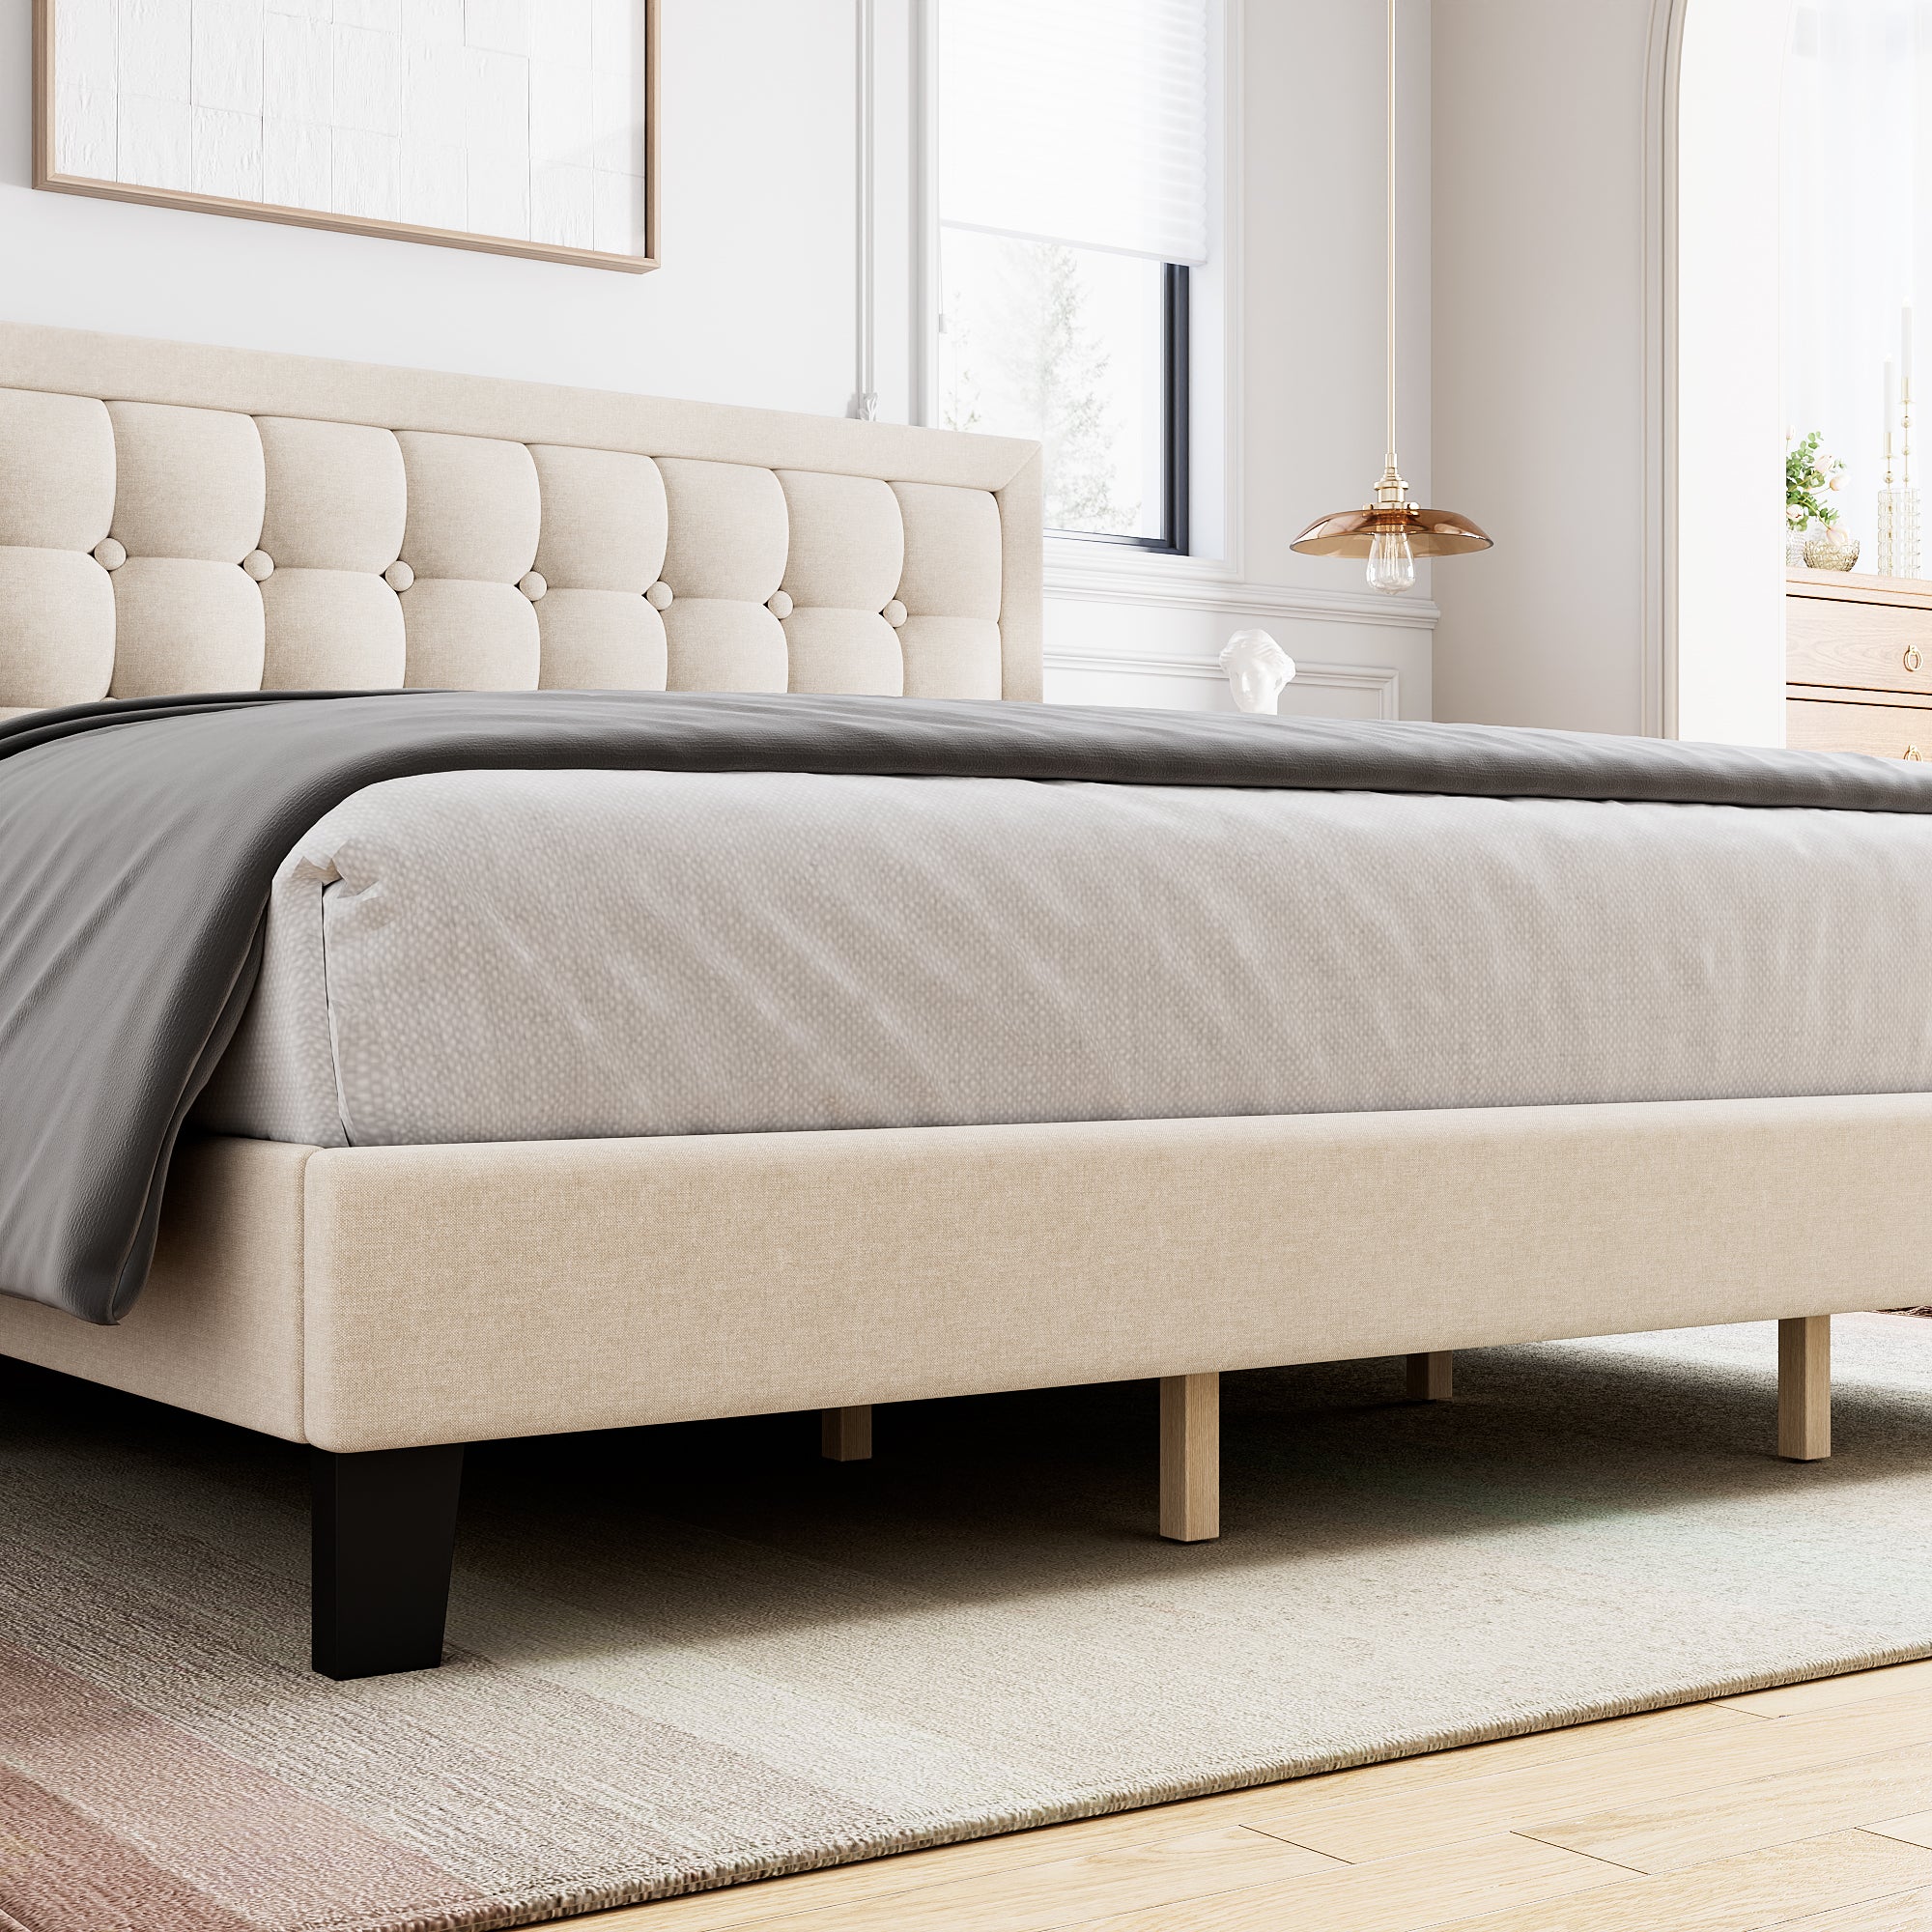 Marco de cama queen con cabecero marco de cama de tamaño completo marco de cama queen muebles tamaño queen conjunto de cama